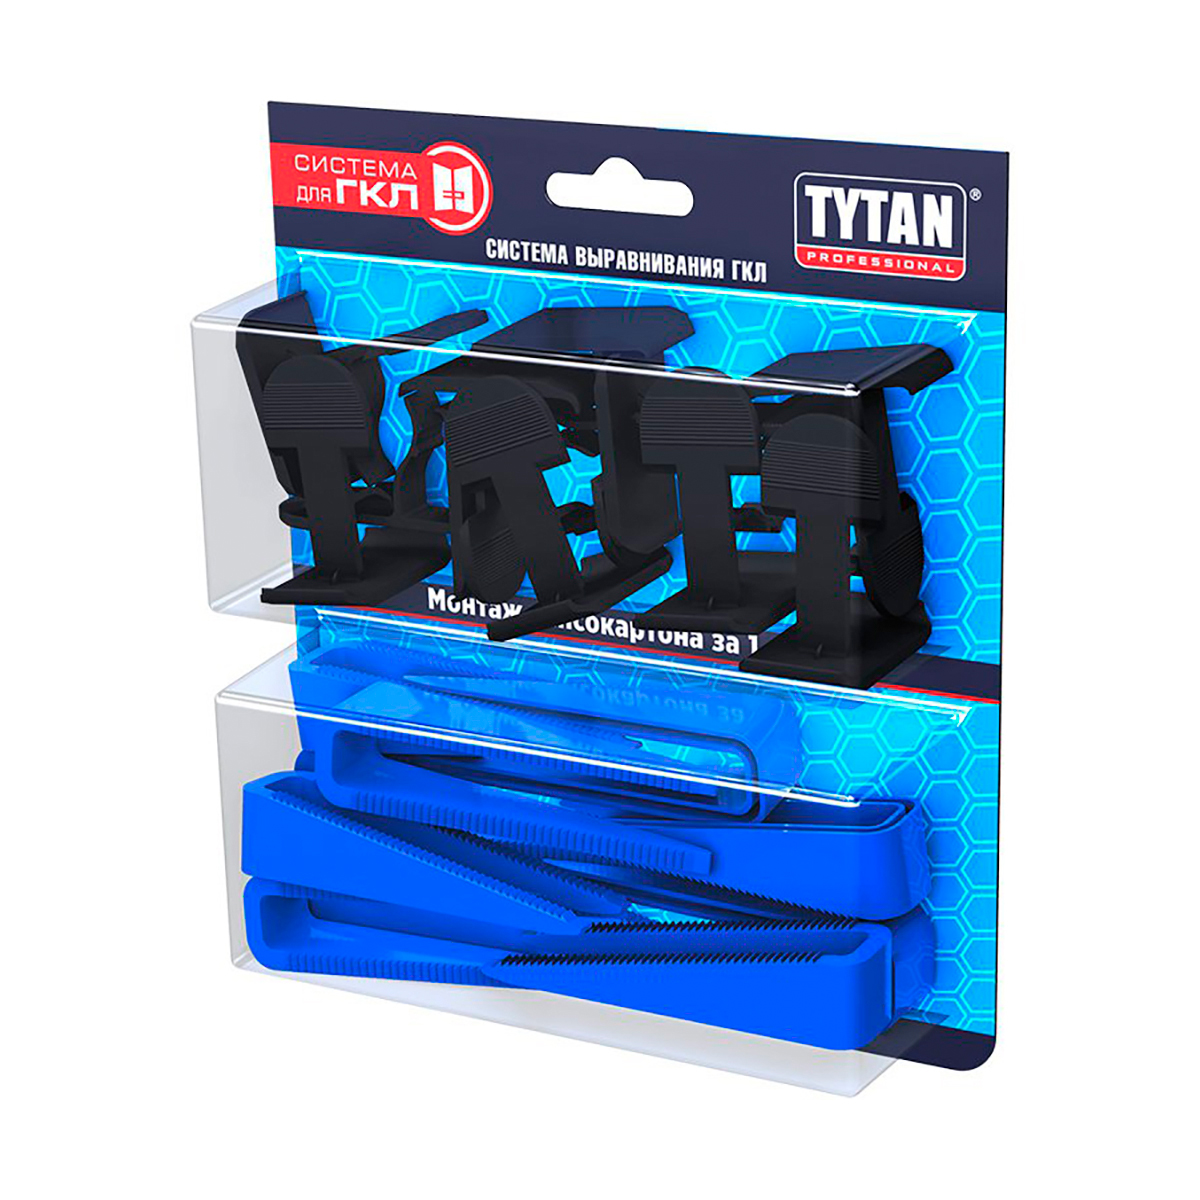 Система выравнивания гипсокартона Tytan Professional, клинья 30 шт + клипсы 30 шт бита для гипсокартона wurz